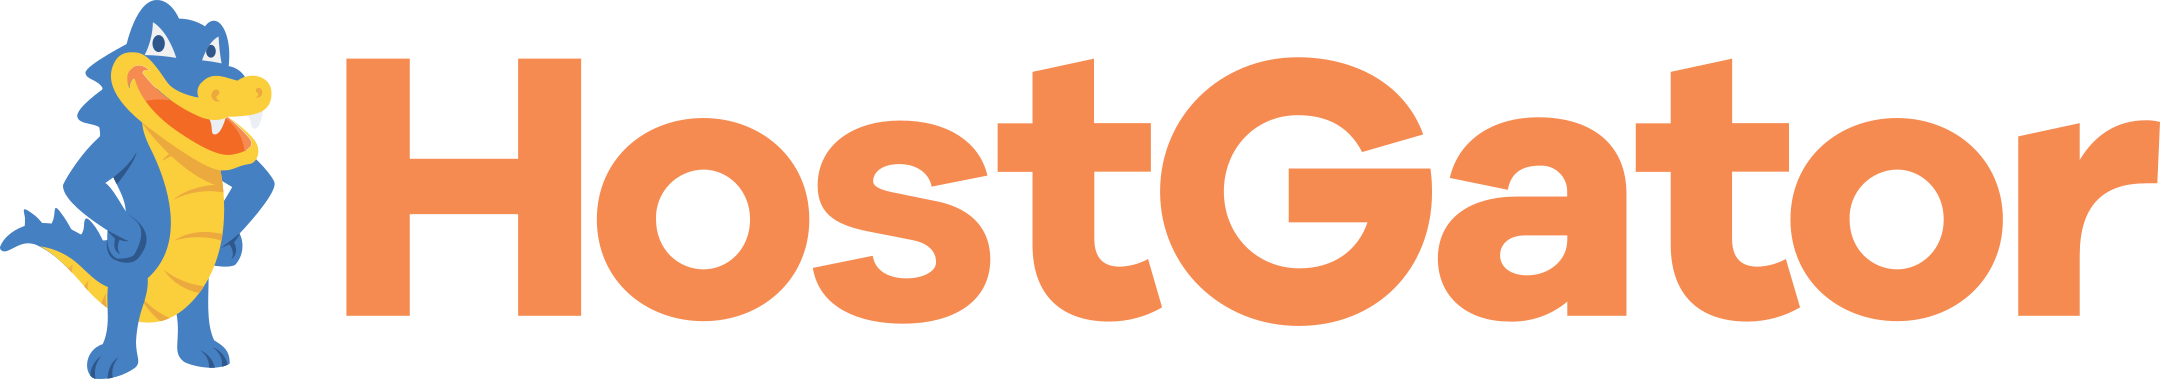 hostgator logo 1 - HostGator Logo